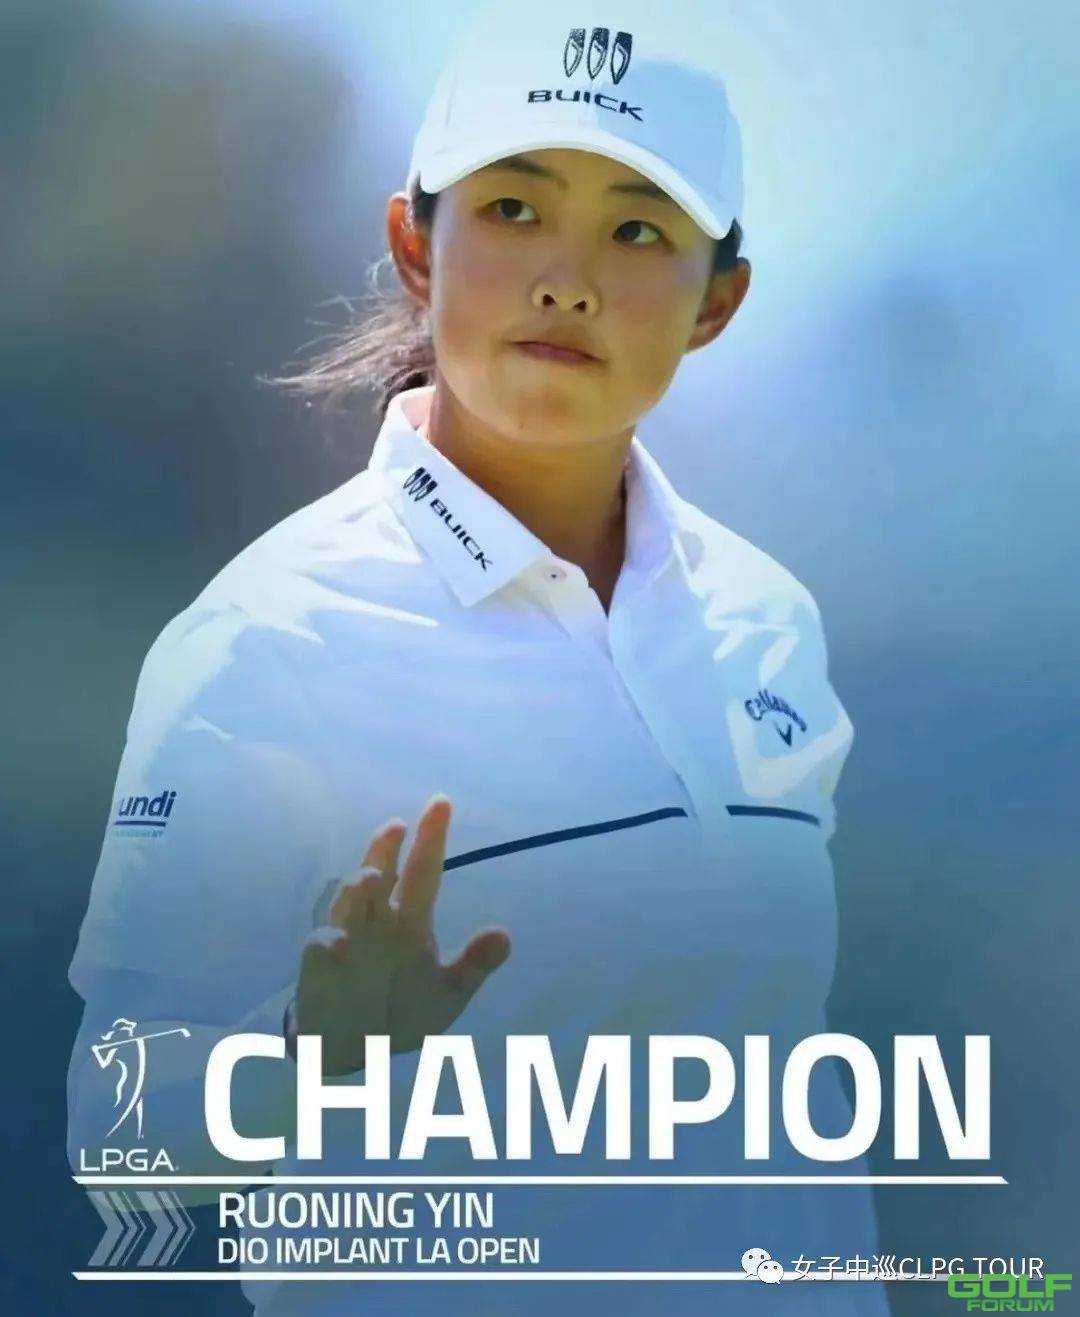 高尔夫全球的爆炸式发展预示着中国女子高尔夫的美好前景 ...